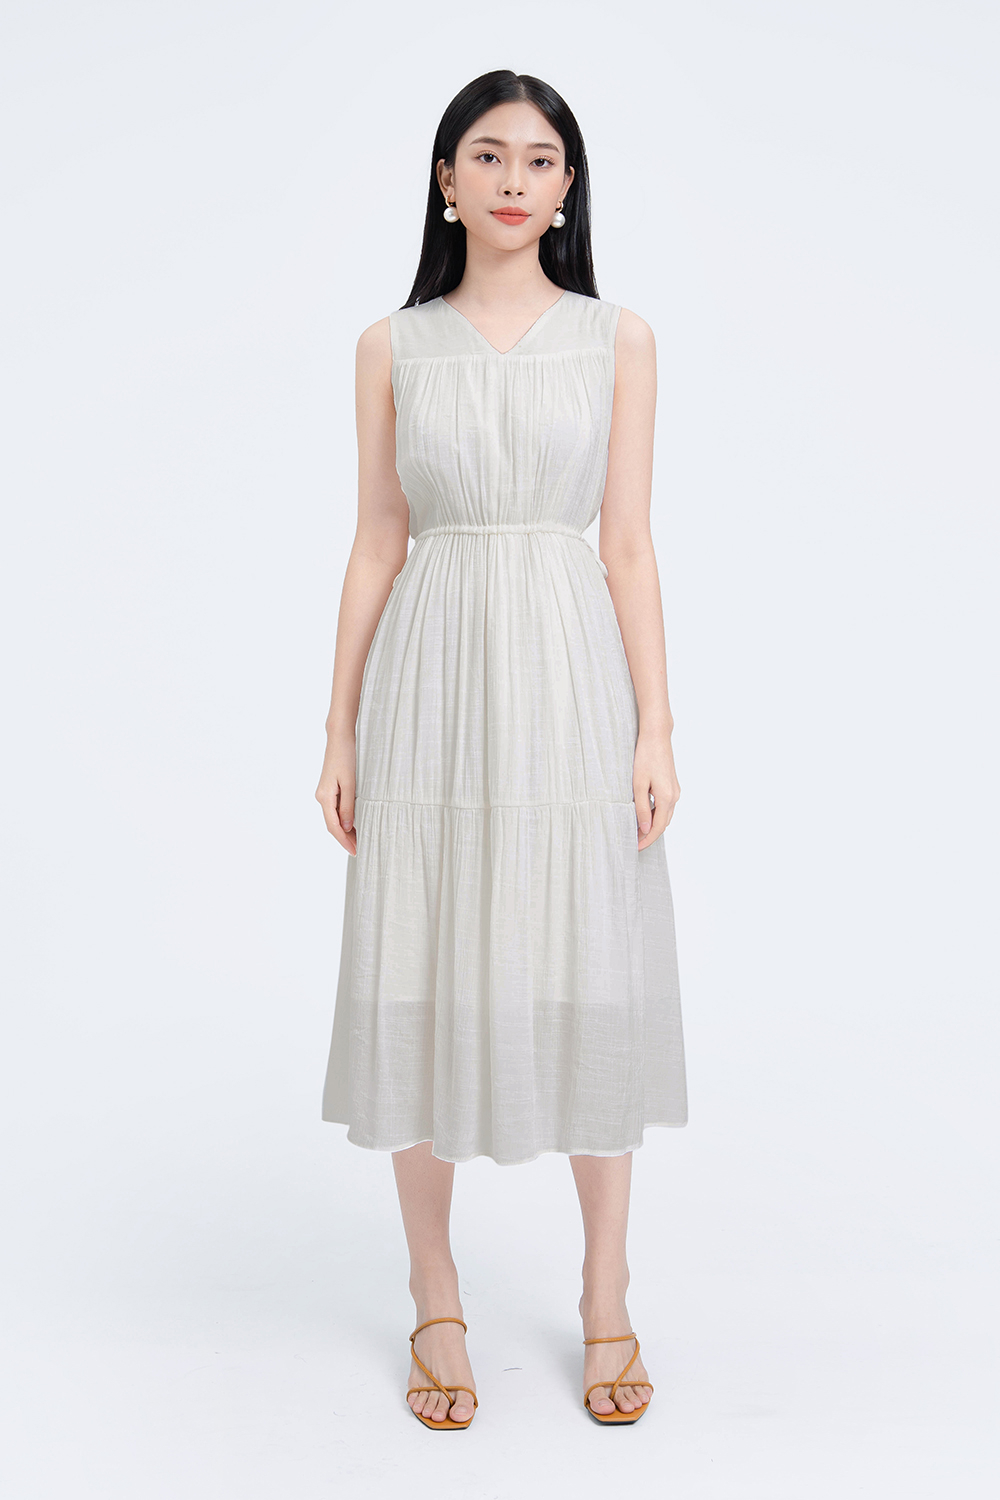 Đầm trắng dáng dài nhấn eo HL17-18 | Thời trang công sở K&K Fashion